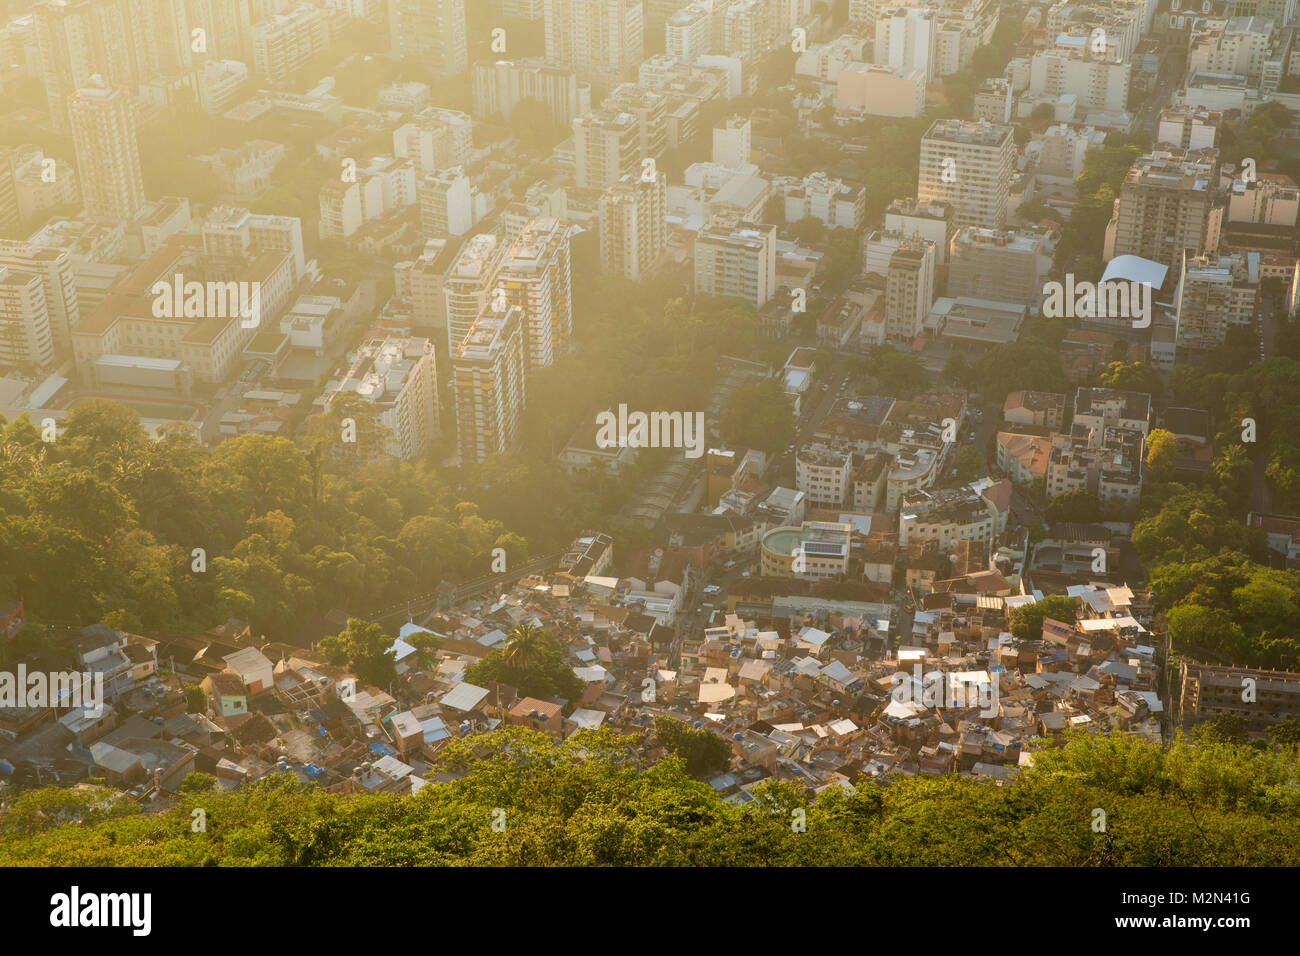 La disuguaglianza - contrasto tra ricchi e poveri a Rio de Janeiro in Brasile Foto Stock